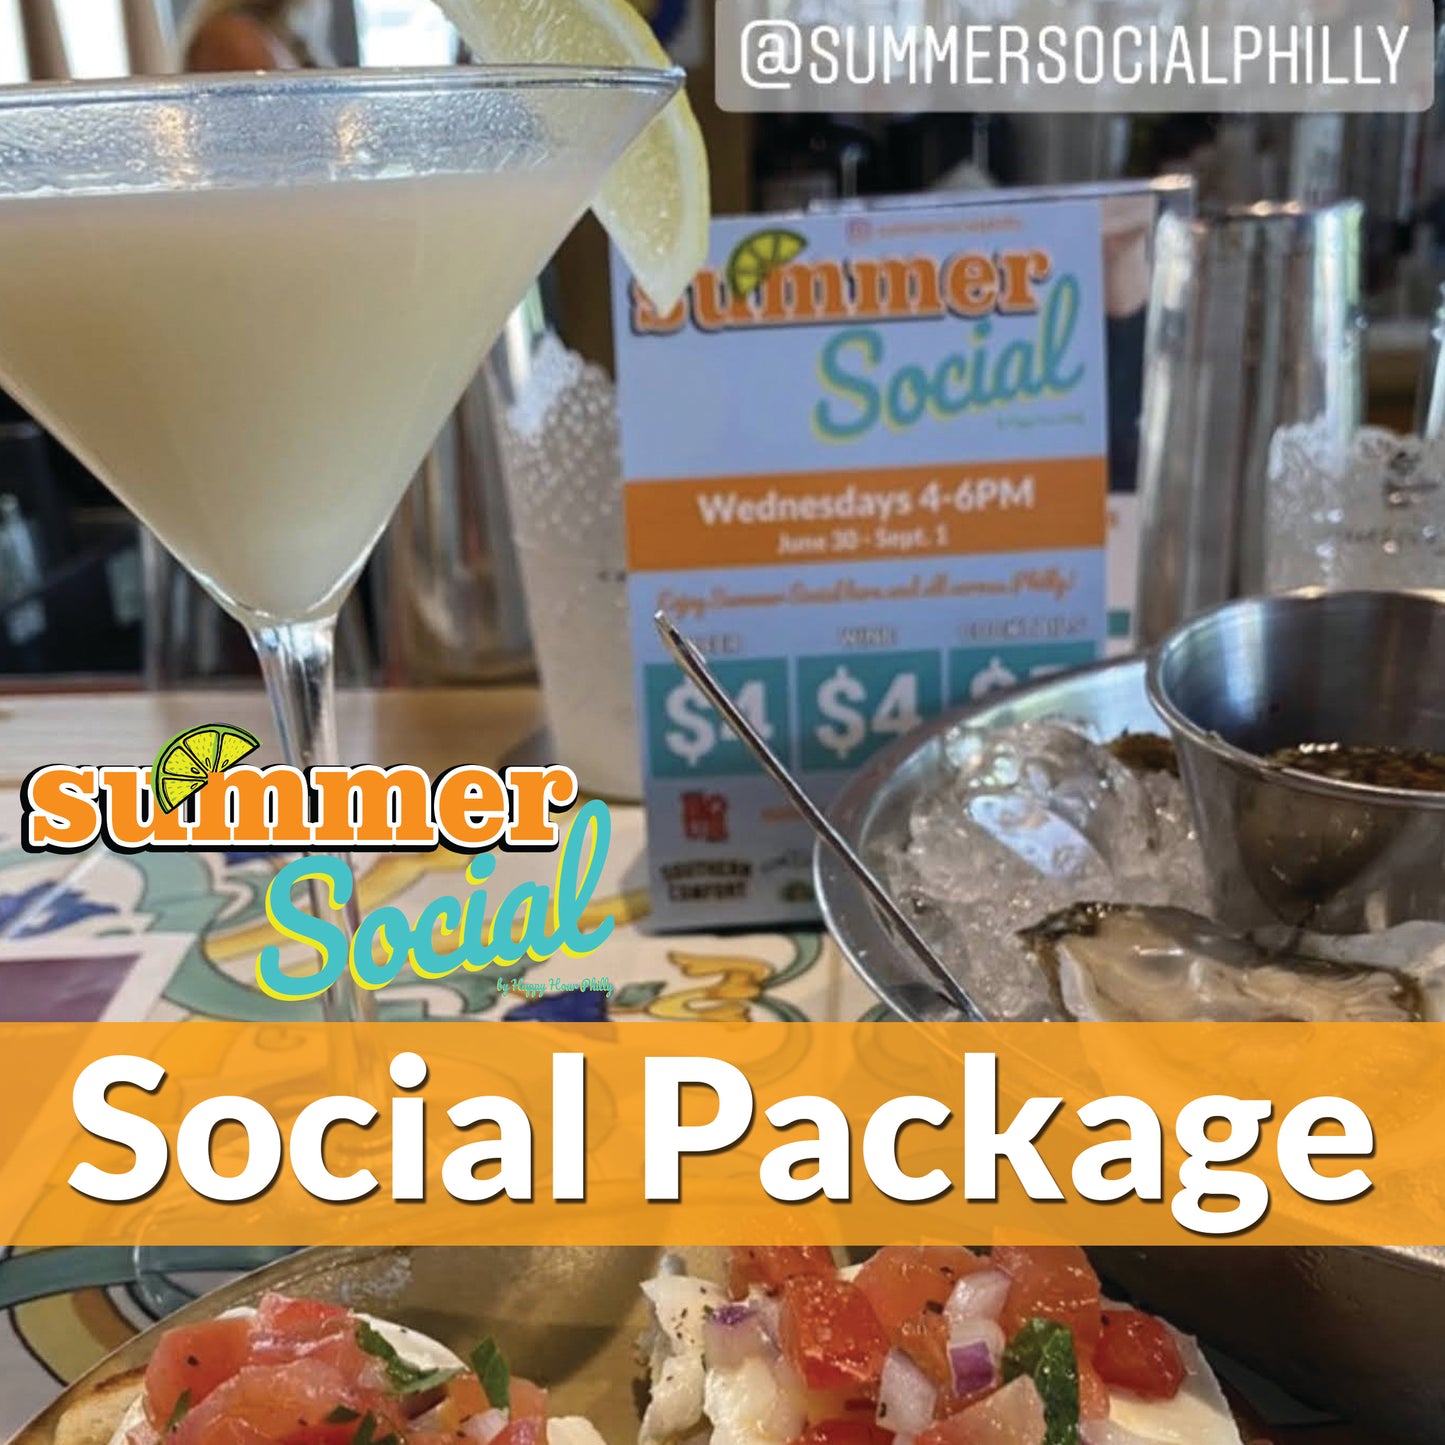 Summer Social - Social Package Early Bird ($23 per week)